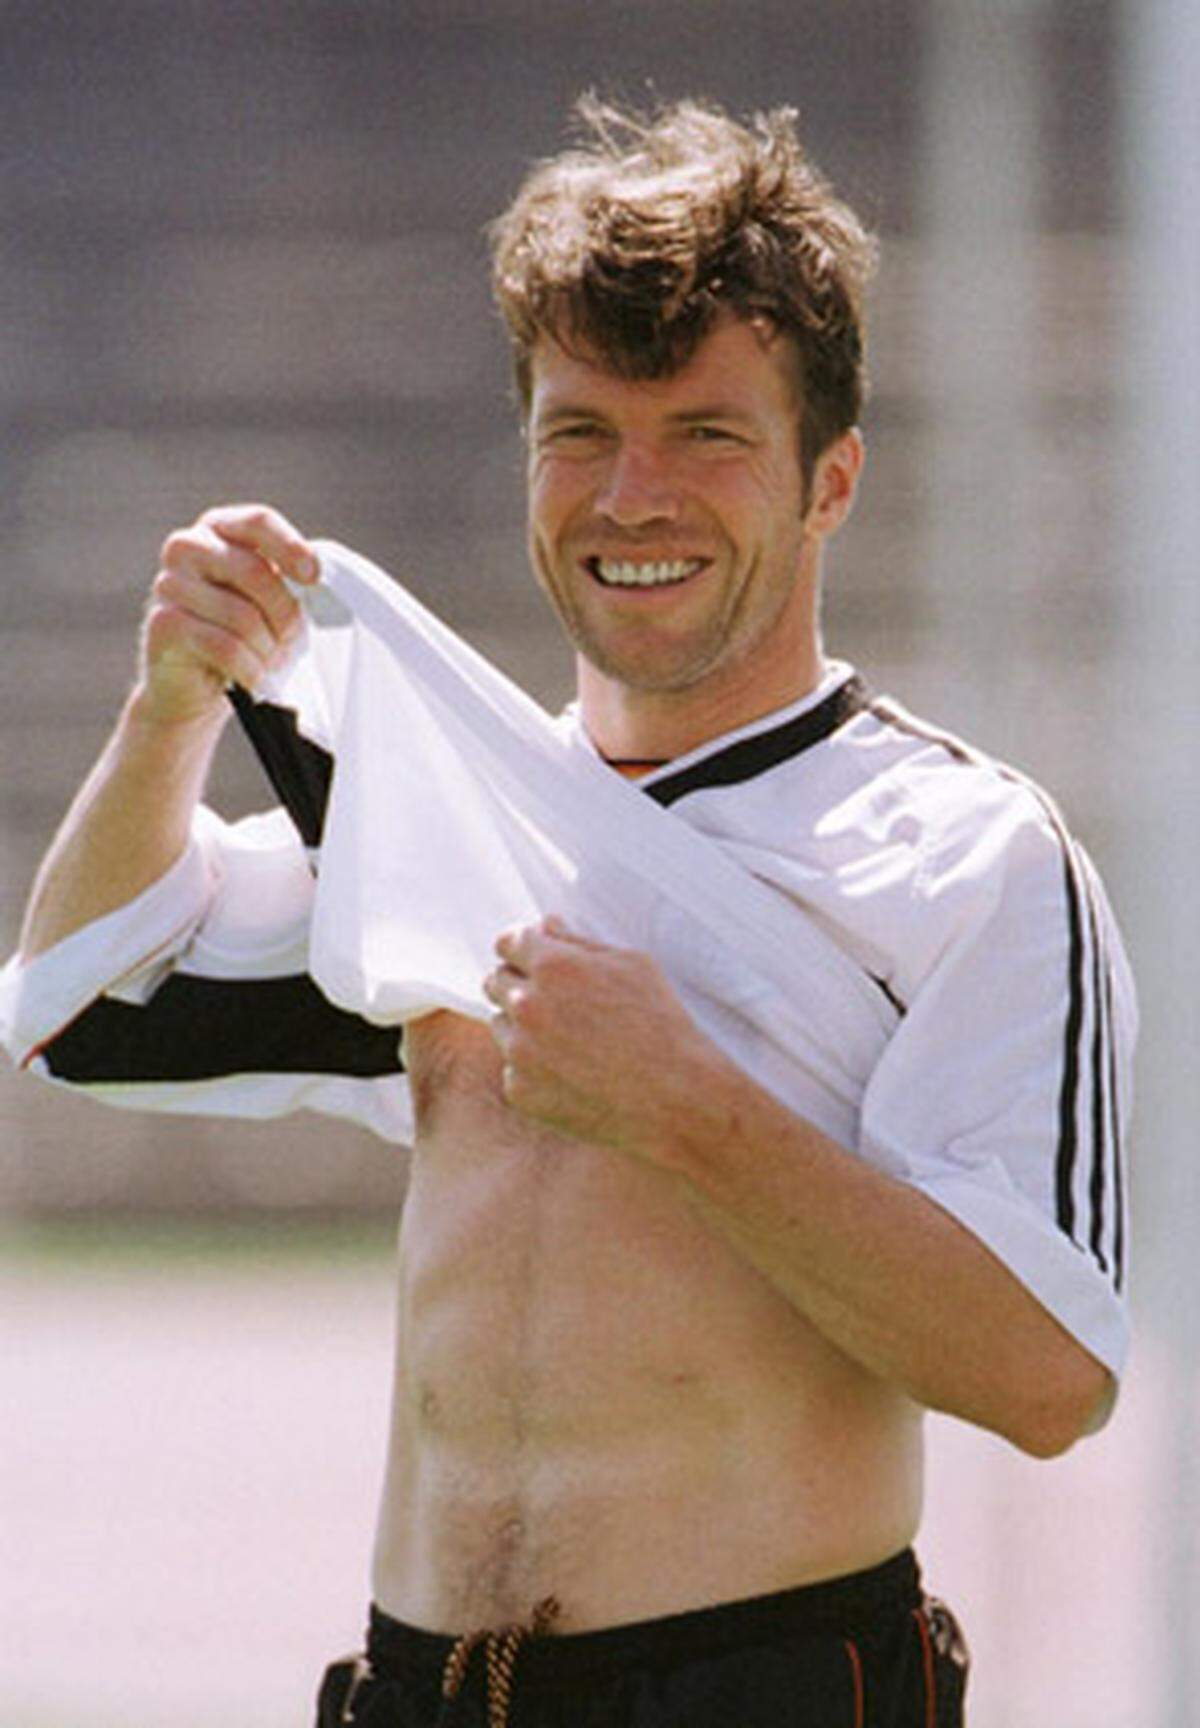 Zwischen 1982 und 1998 lief Lothar Matthäus 25mal für die DFB-Elf auf. Höhepunkt dabei war der Titelgewinn 1990. Matthäus stand dabei in allen sieben Spielen von der ersten bis zur letzten Minute auf dem Platz und war mit vier Treffern bester Torschütze der Deutschen.